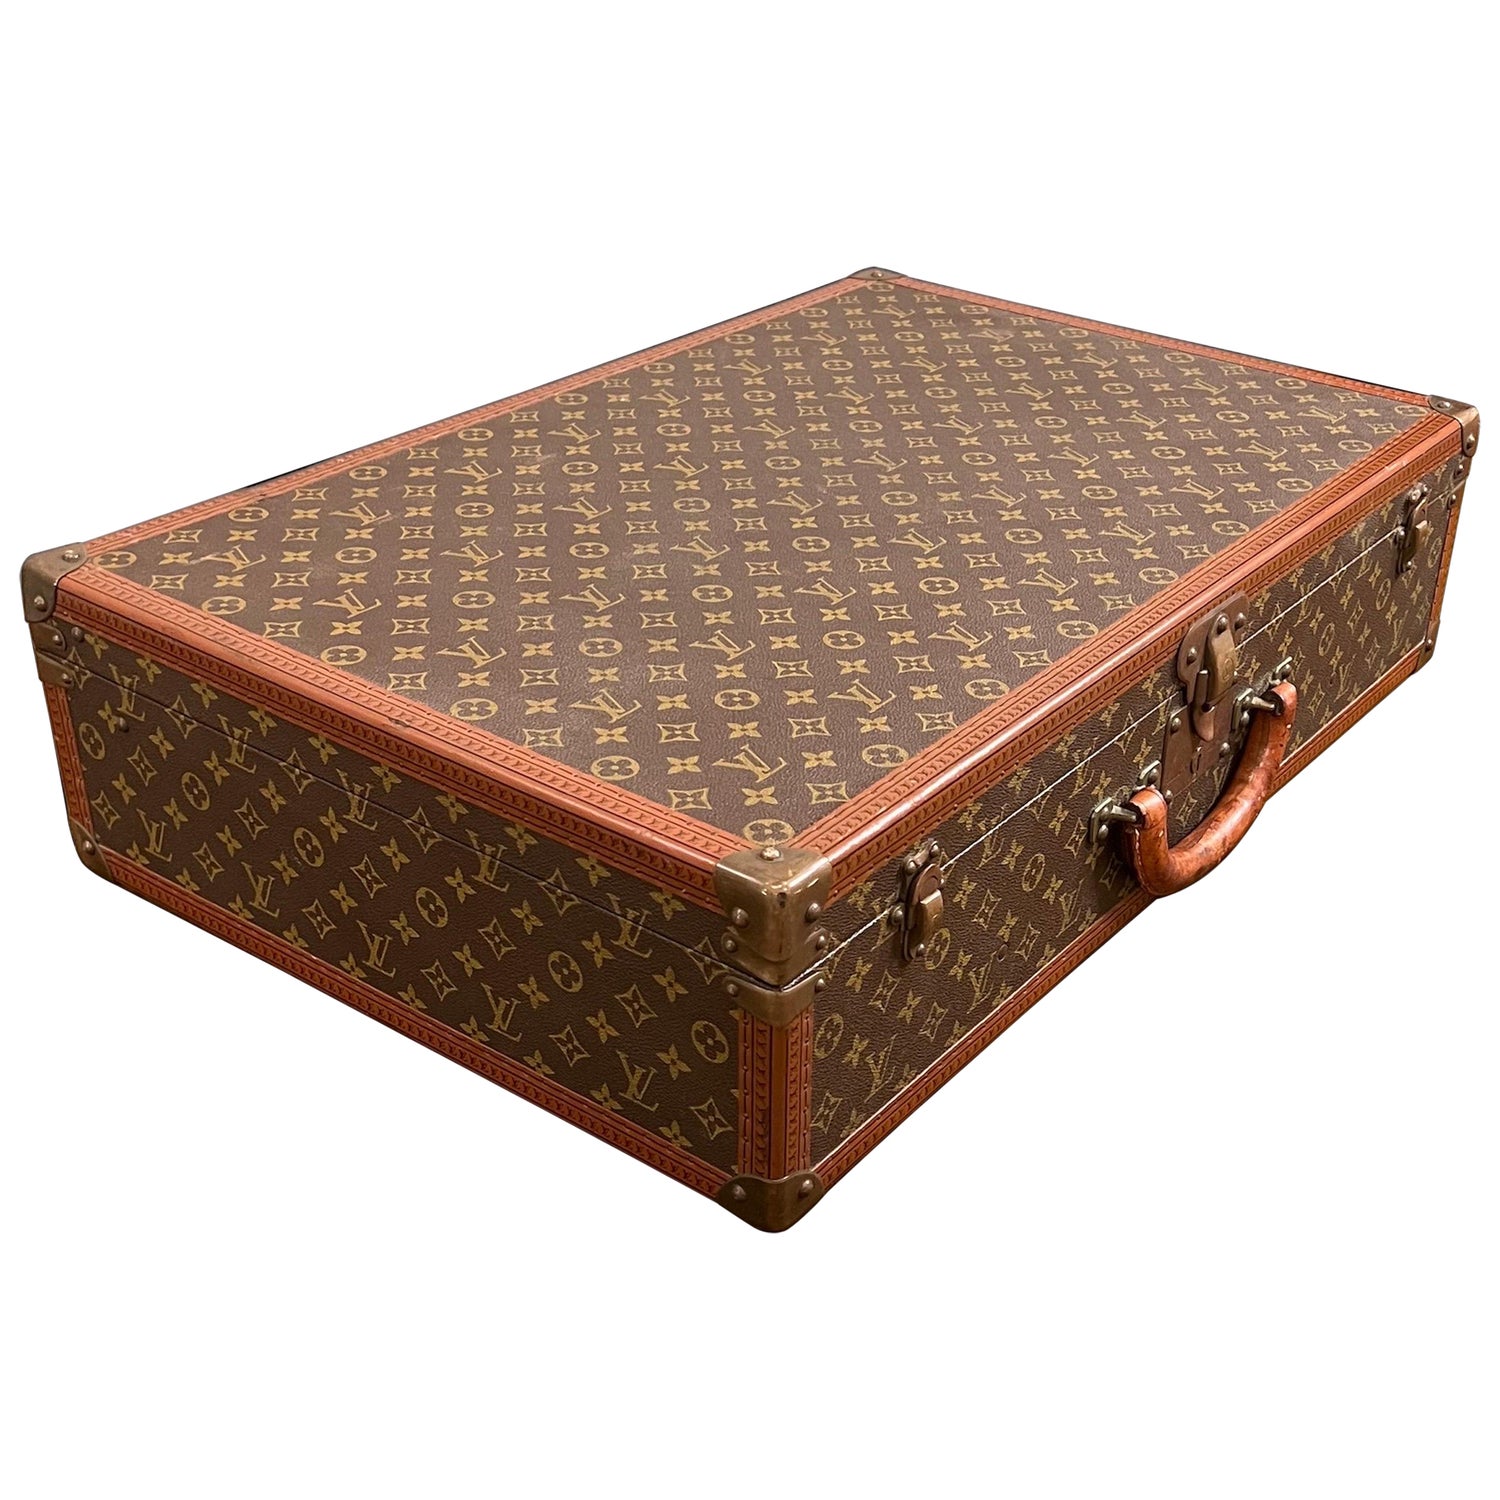 Sold at Auction: A 1980/90s Louis Vuitton canvas monogram suitcase